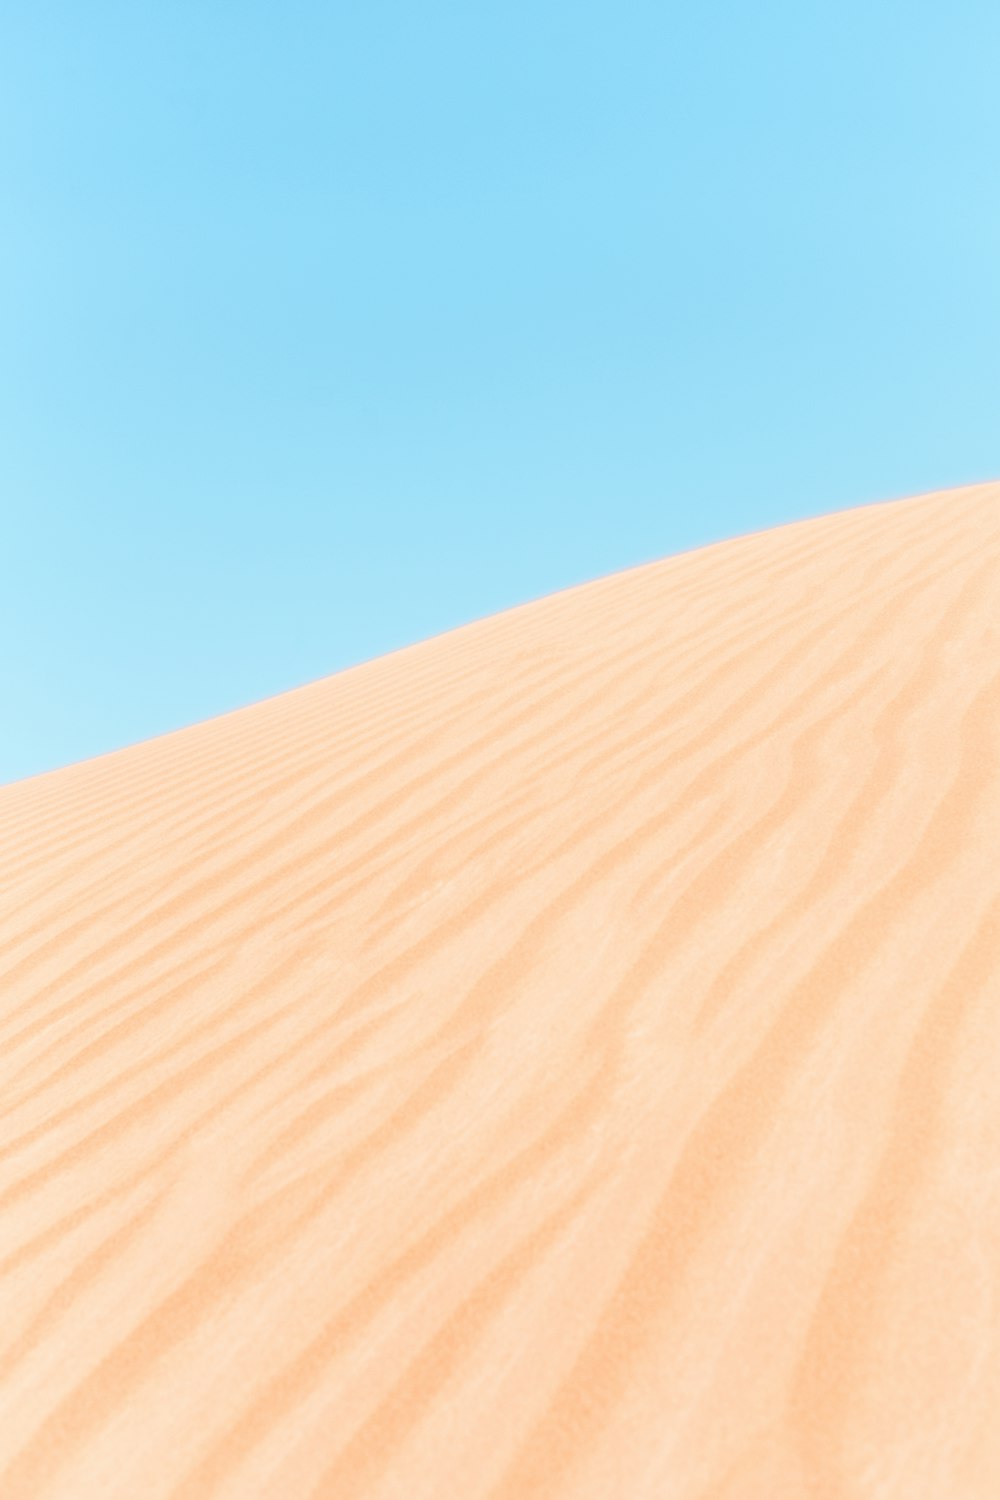 desert during datime